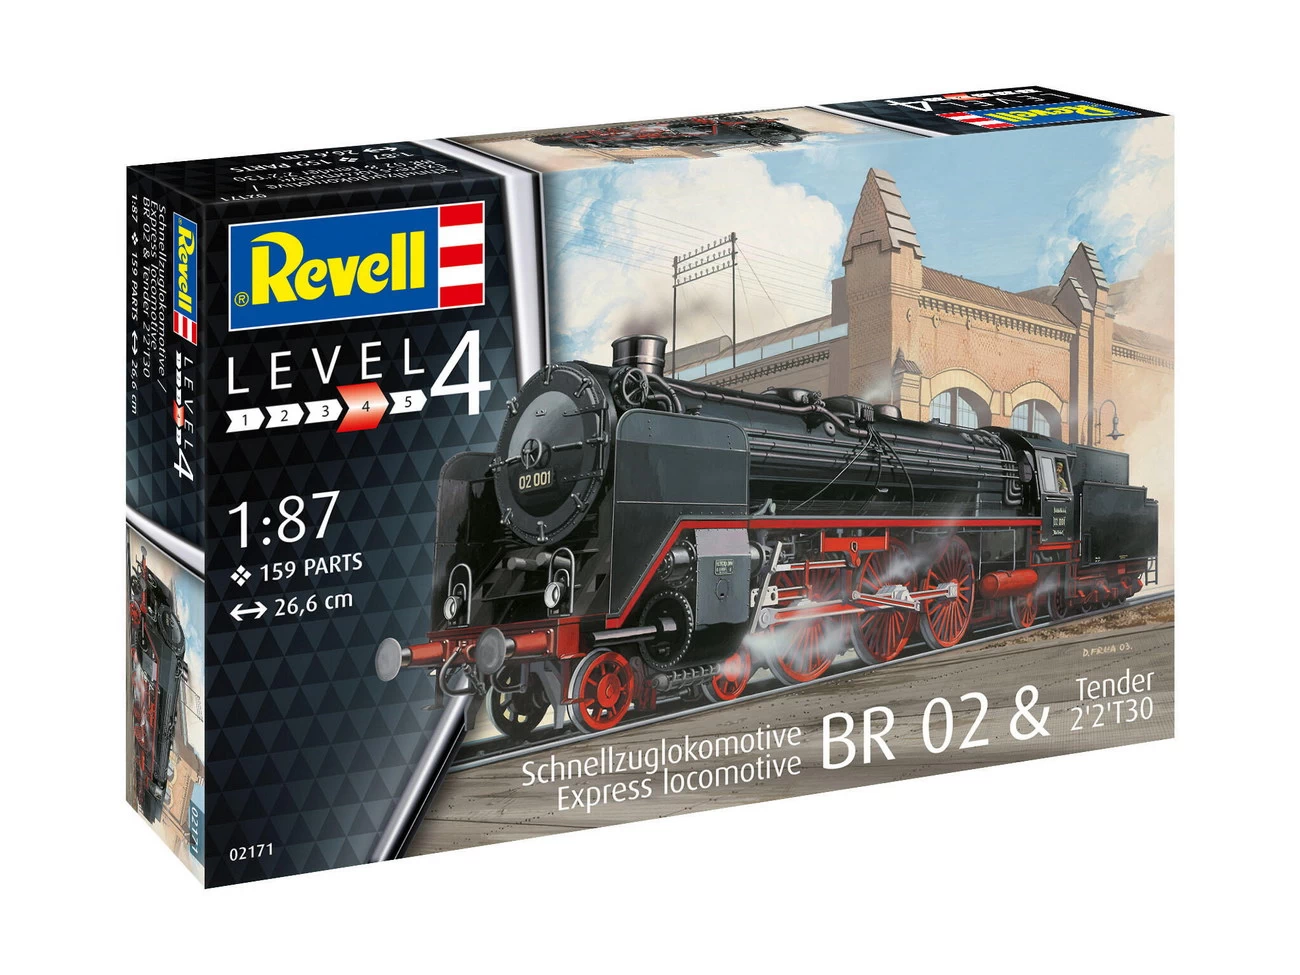 Revell 02171 - Schnellzuglokomotive BR 02 & Tender 2'2'T30